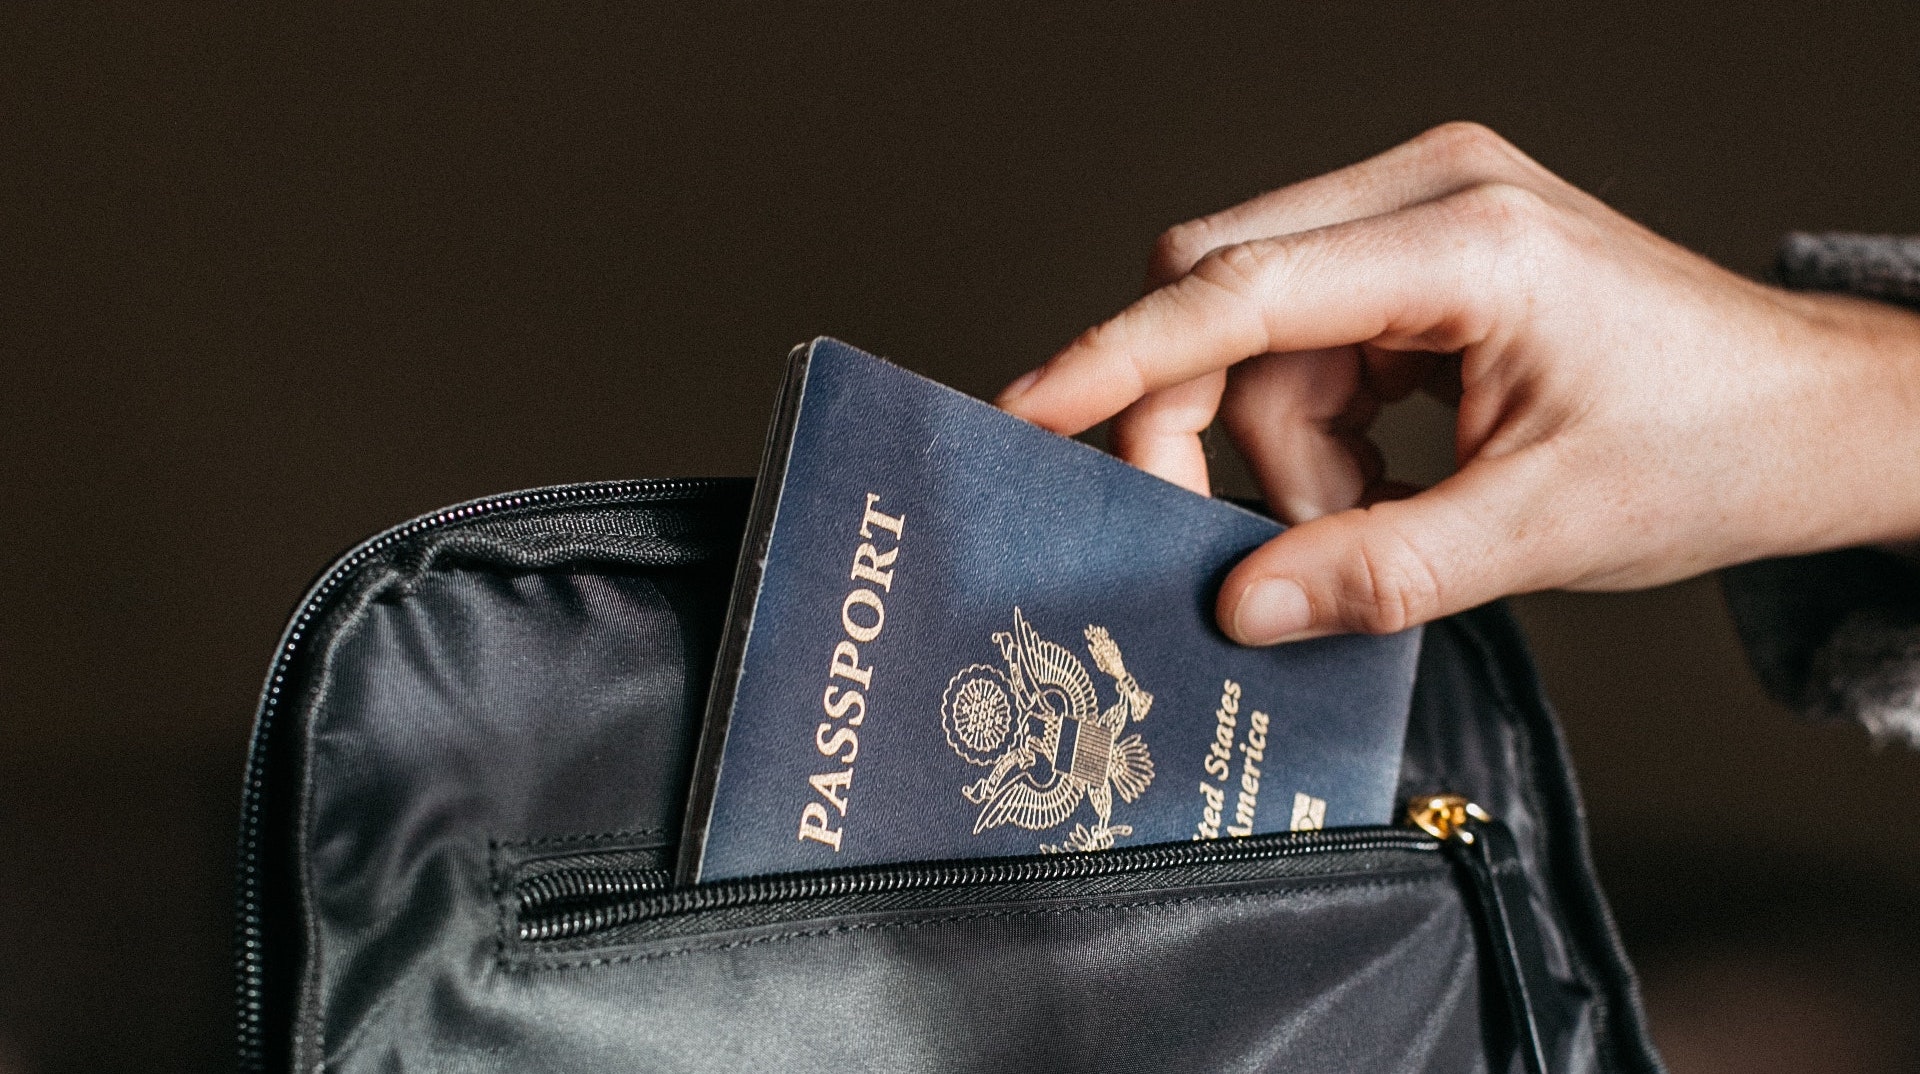 passport into a bag